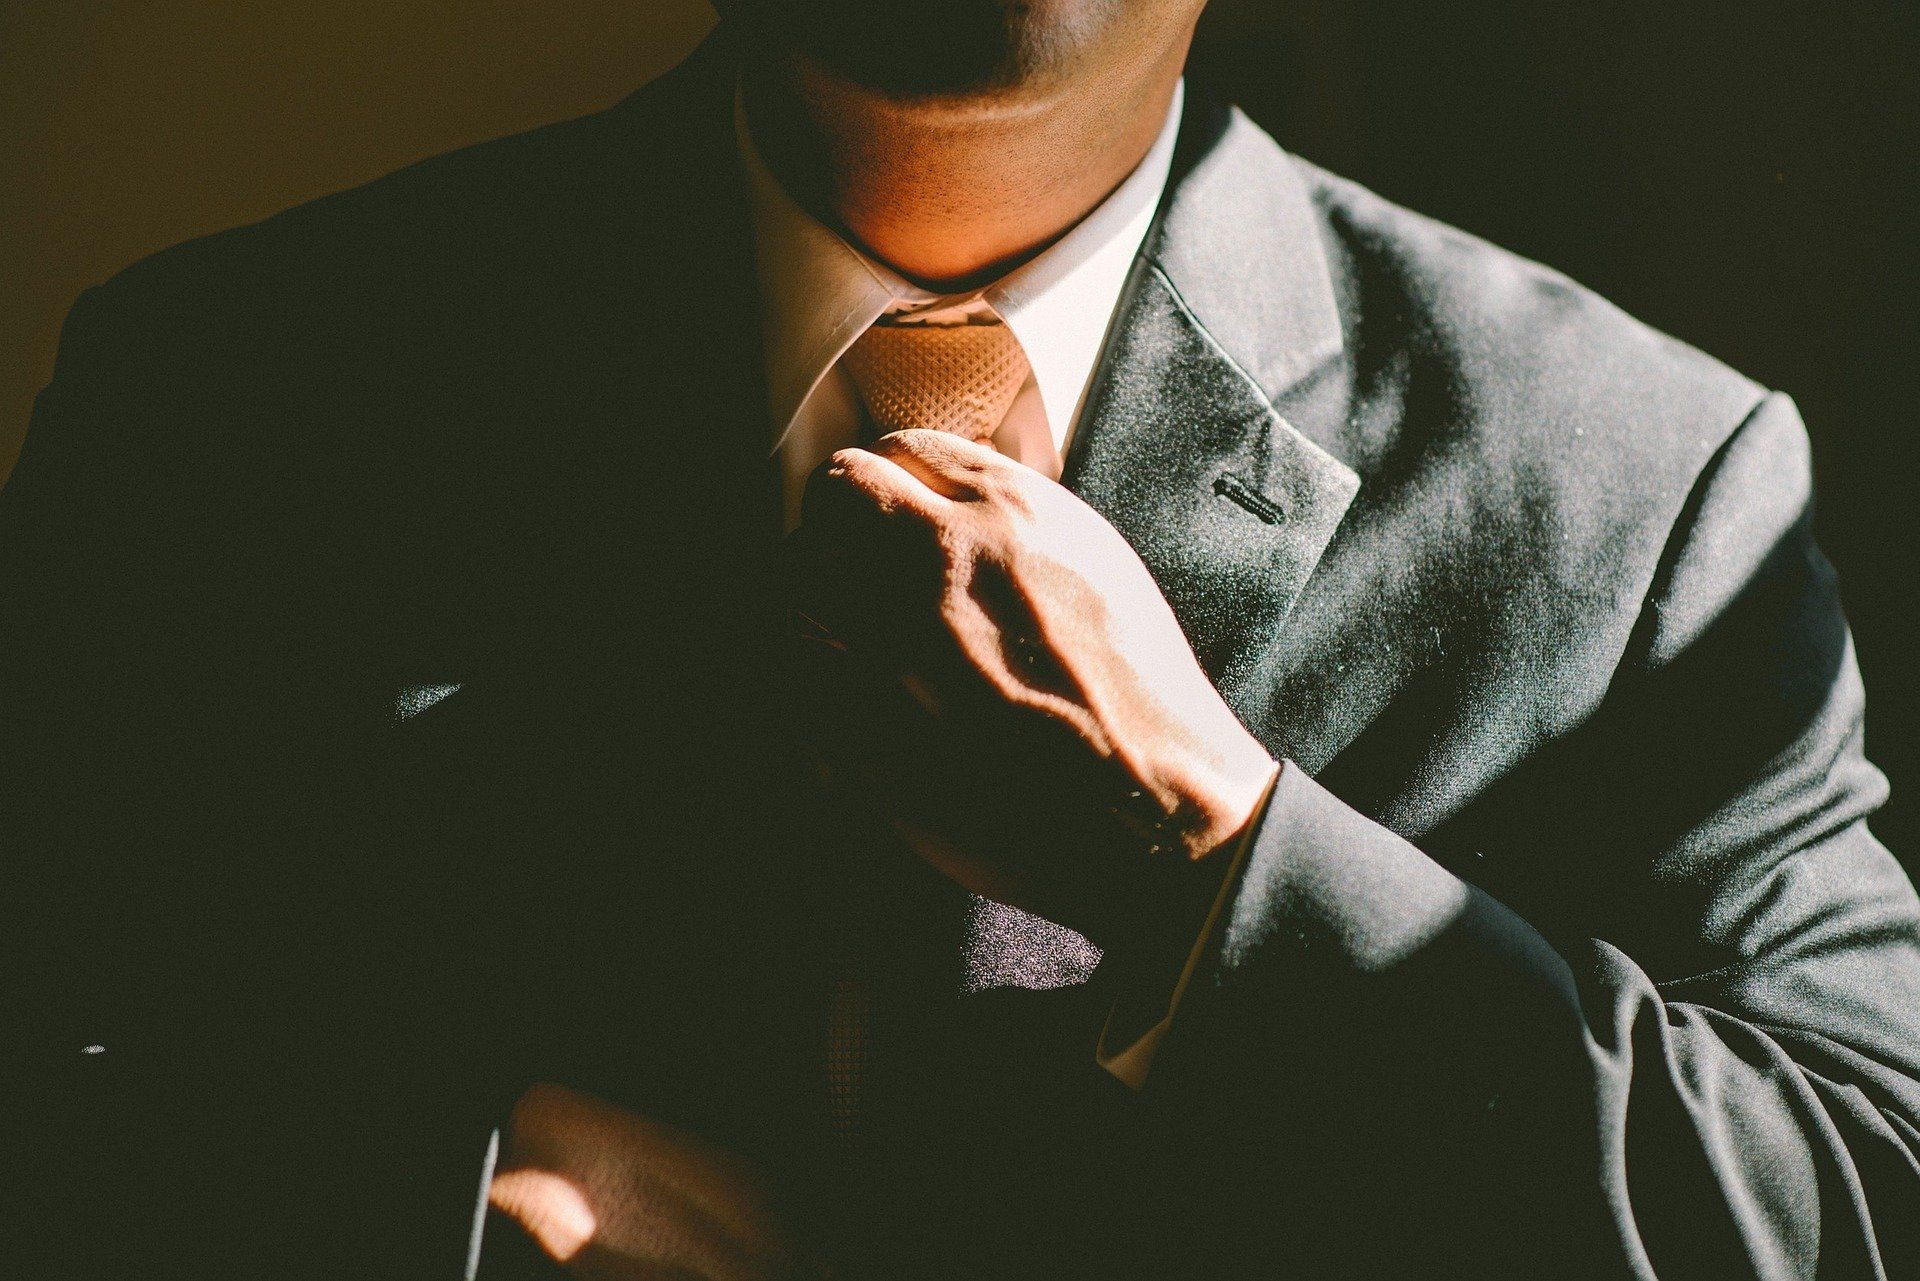 Ein Bildausschnitt zeigt einen Mann, der sich die Krawatte richtet.